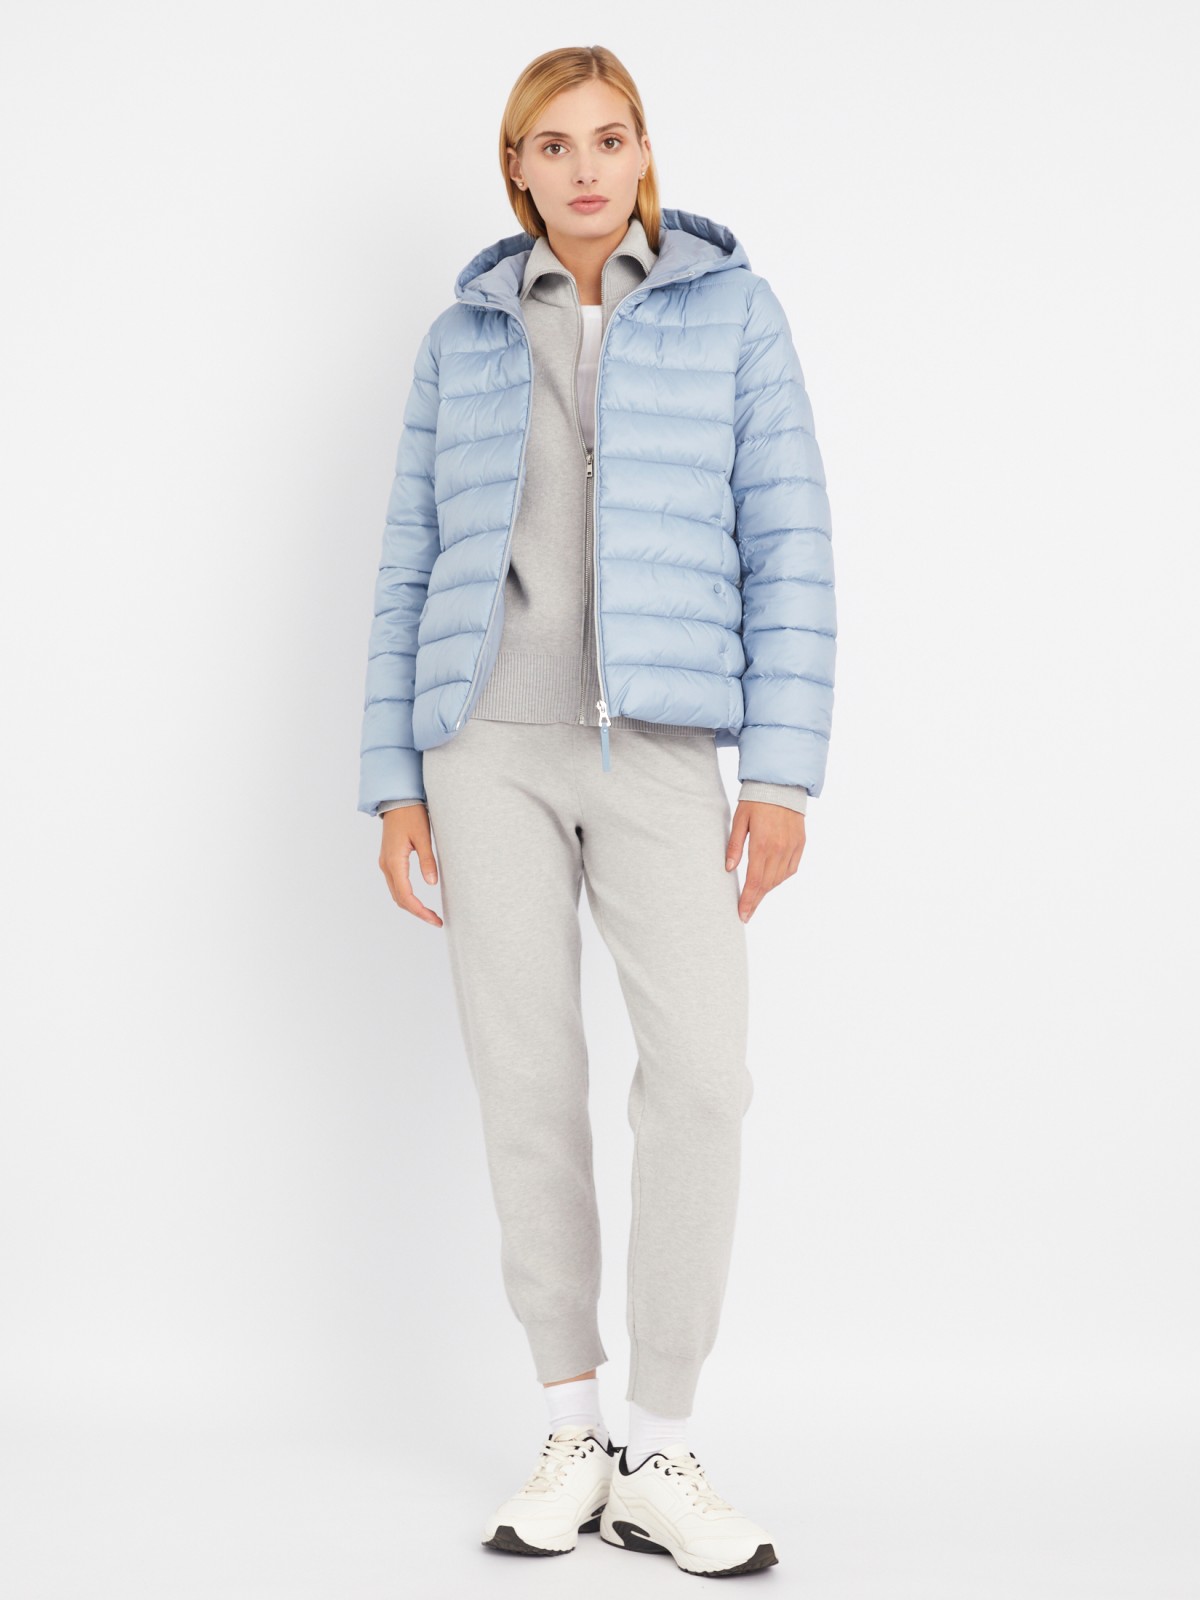 Утеплённая стёганая куртка укороченного фасона с капюшоном zolla 023335112224, цвет голубой, размер S - фото 2